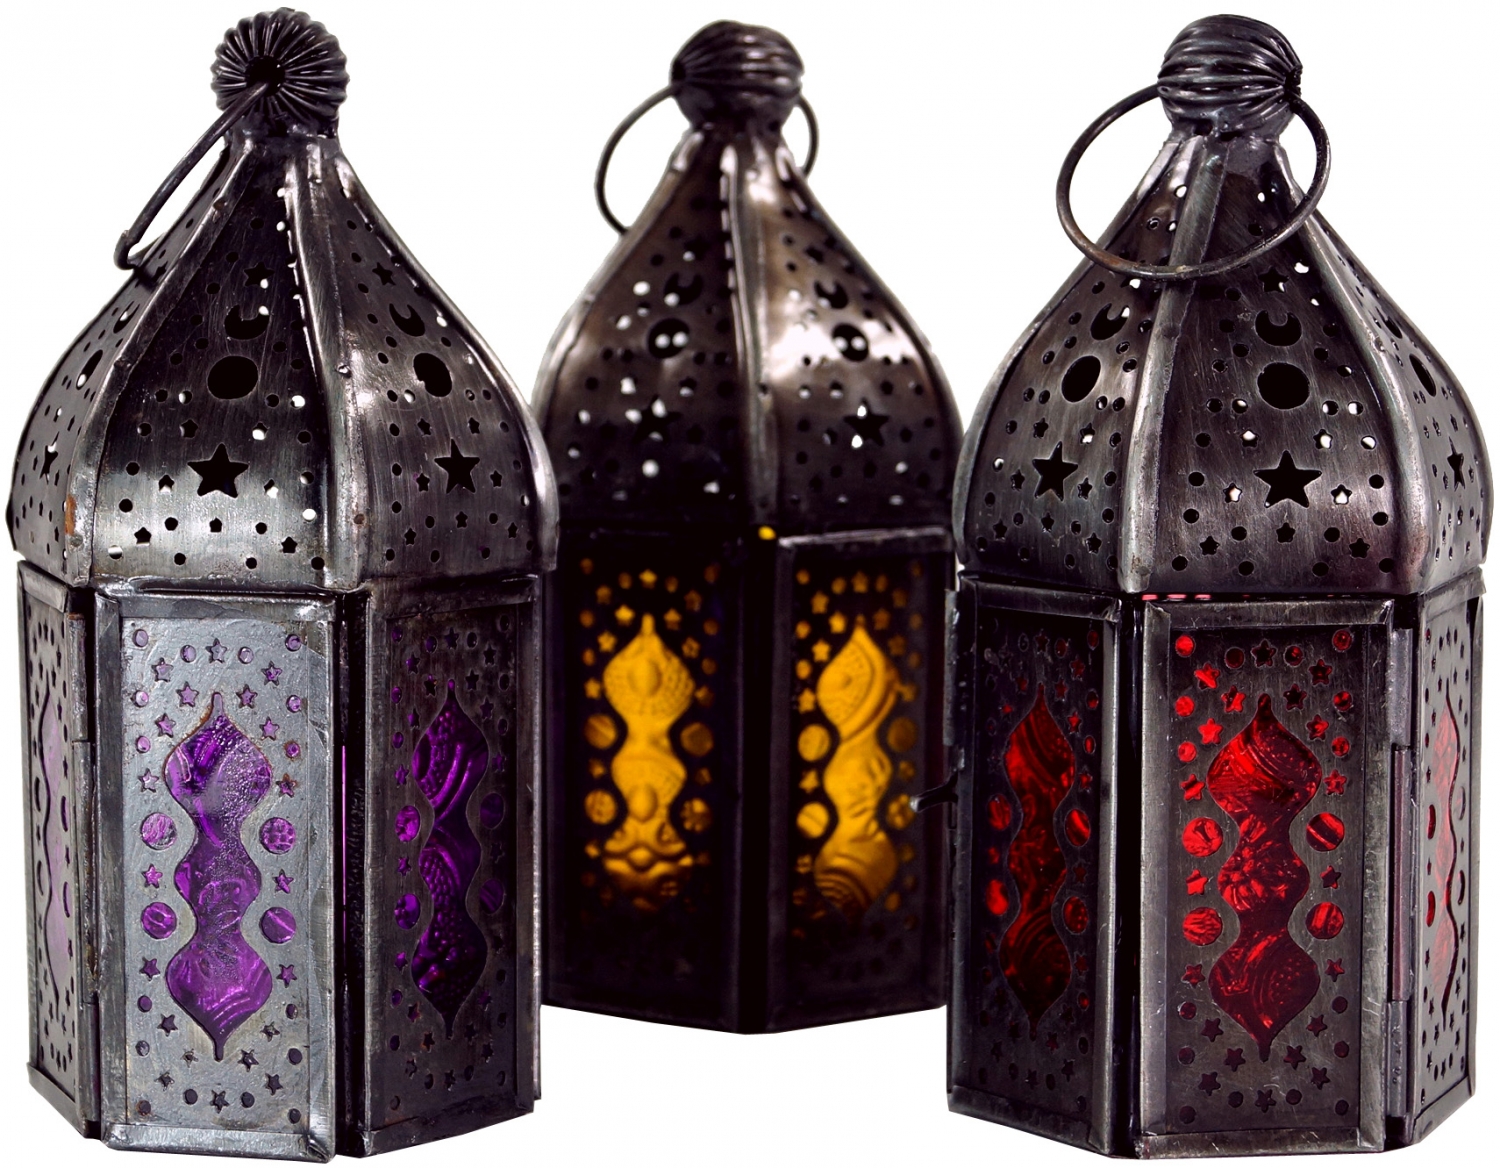 Orientalische Messing/Glas Laterne in marrokanischem Design Vintage Windlicht 